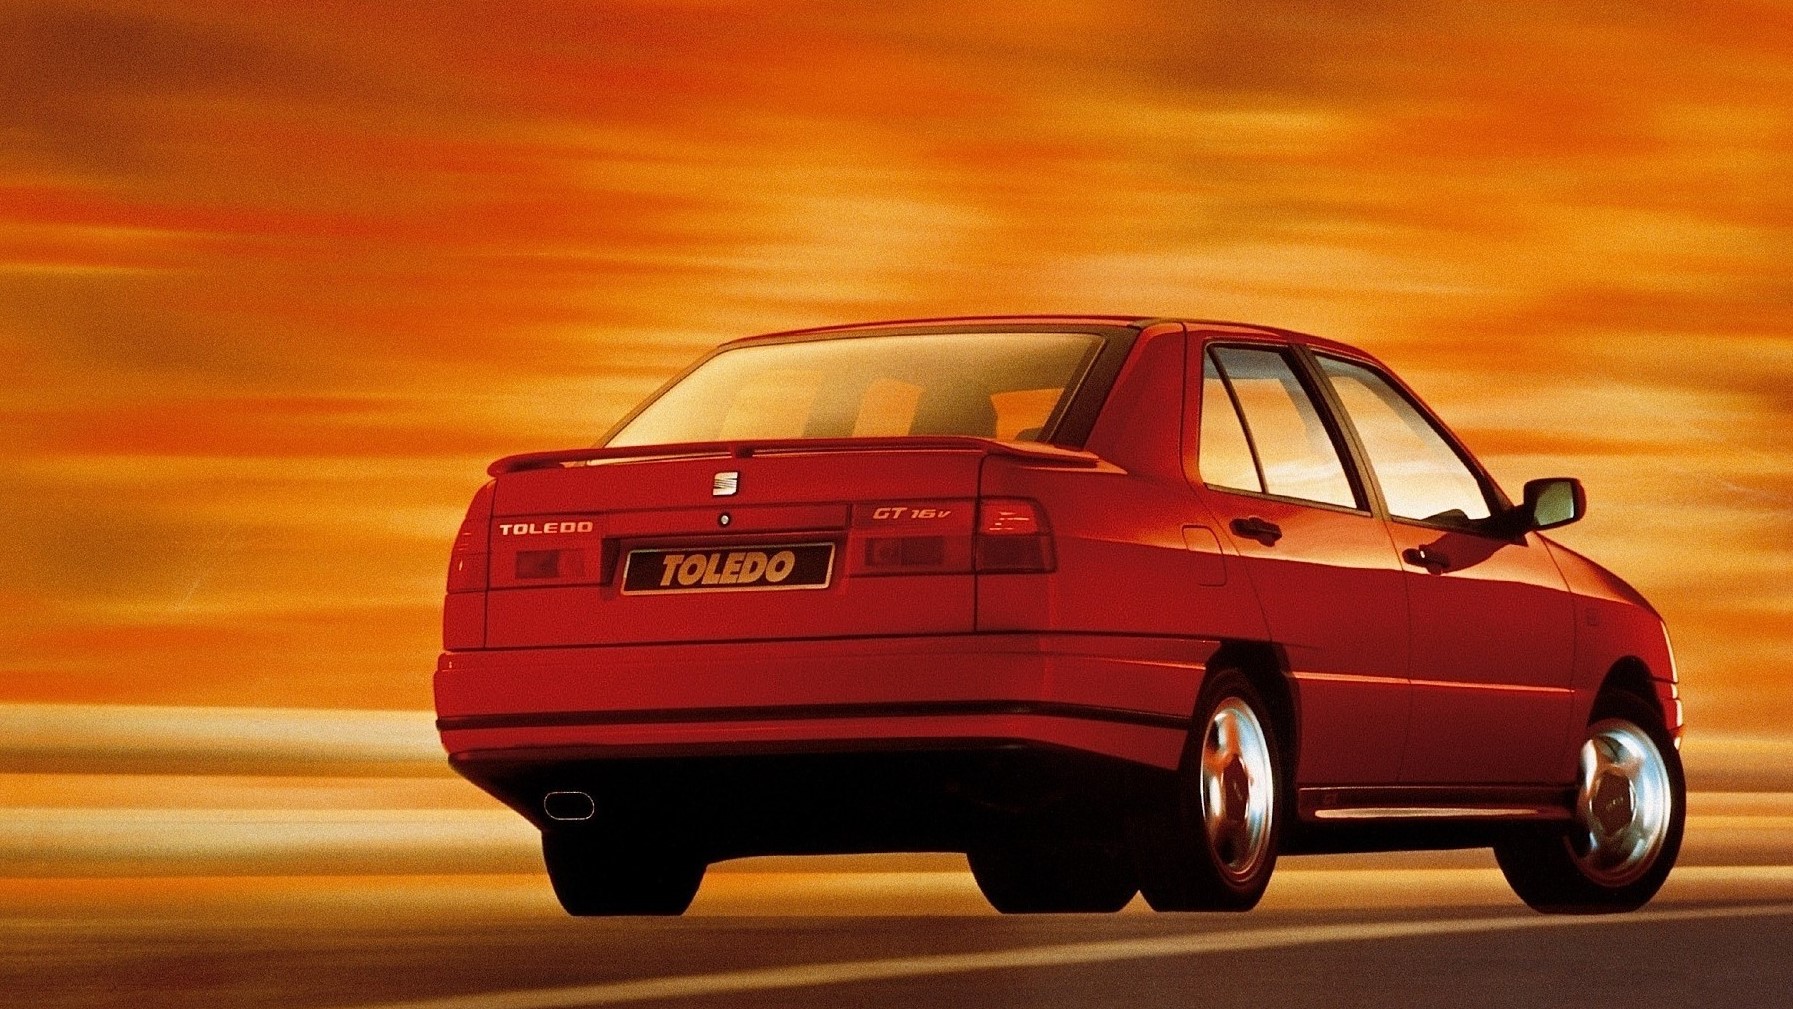 1991 SEAT Toledo GT 16v